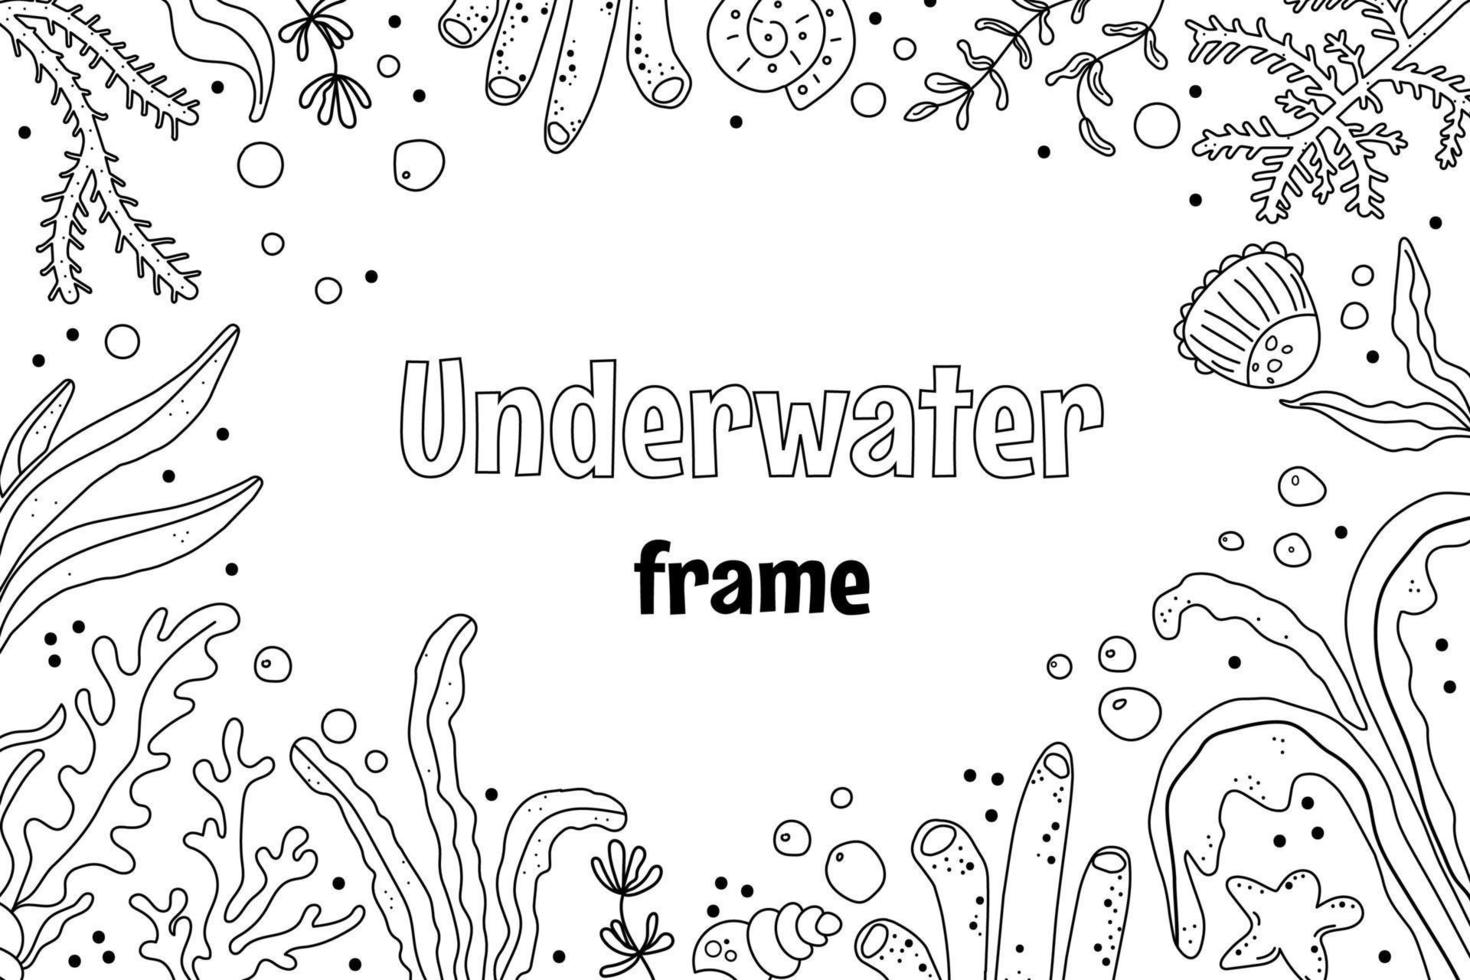 Unterwasserwelt handgezeichneter Rahmen. algen, muscheln, seesterne, korallen, wasserblasenskizzenillustration. Sammlung Unterwasserleben. Vektorillustration im einfachen Gekritzelstil vektor